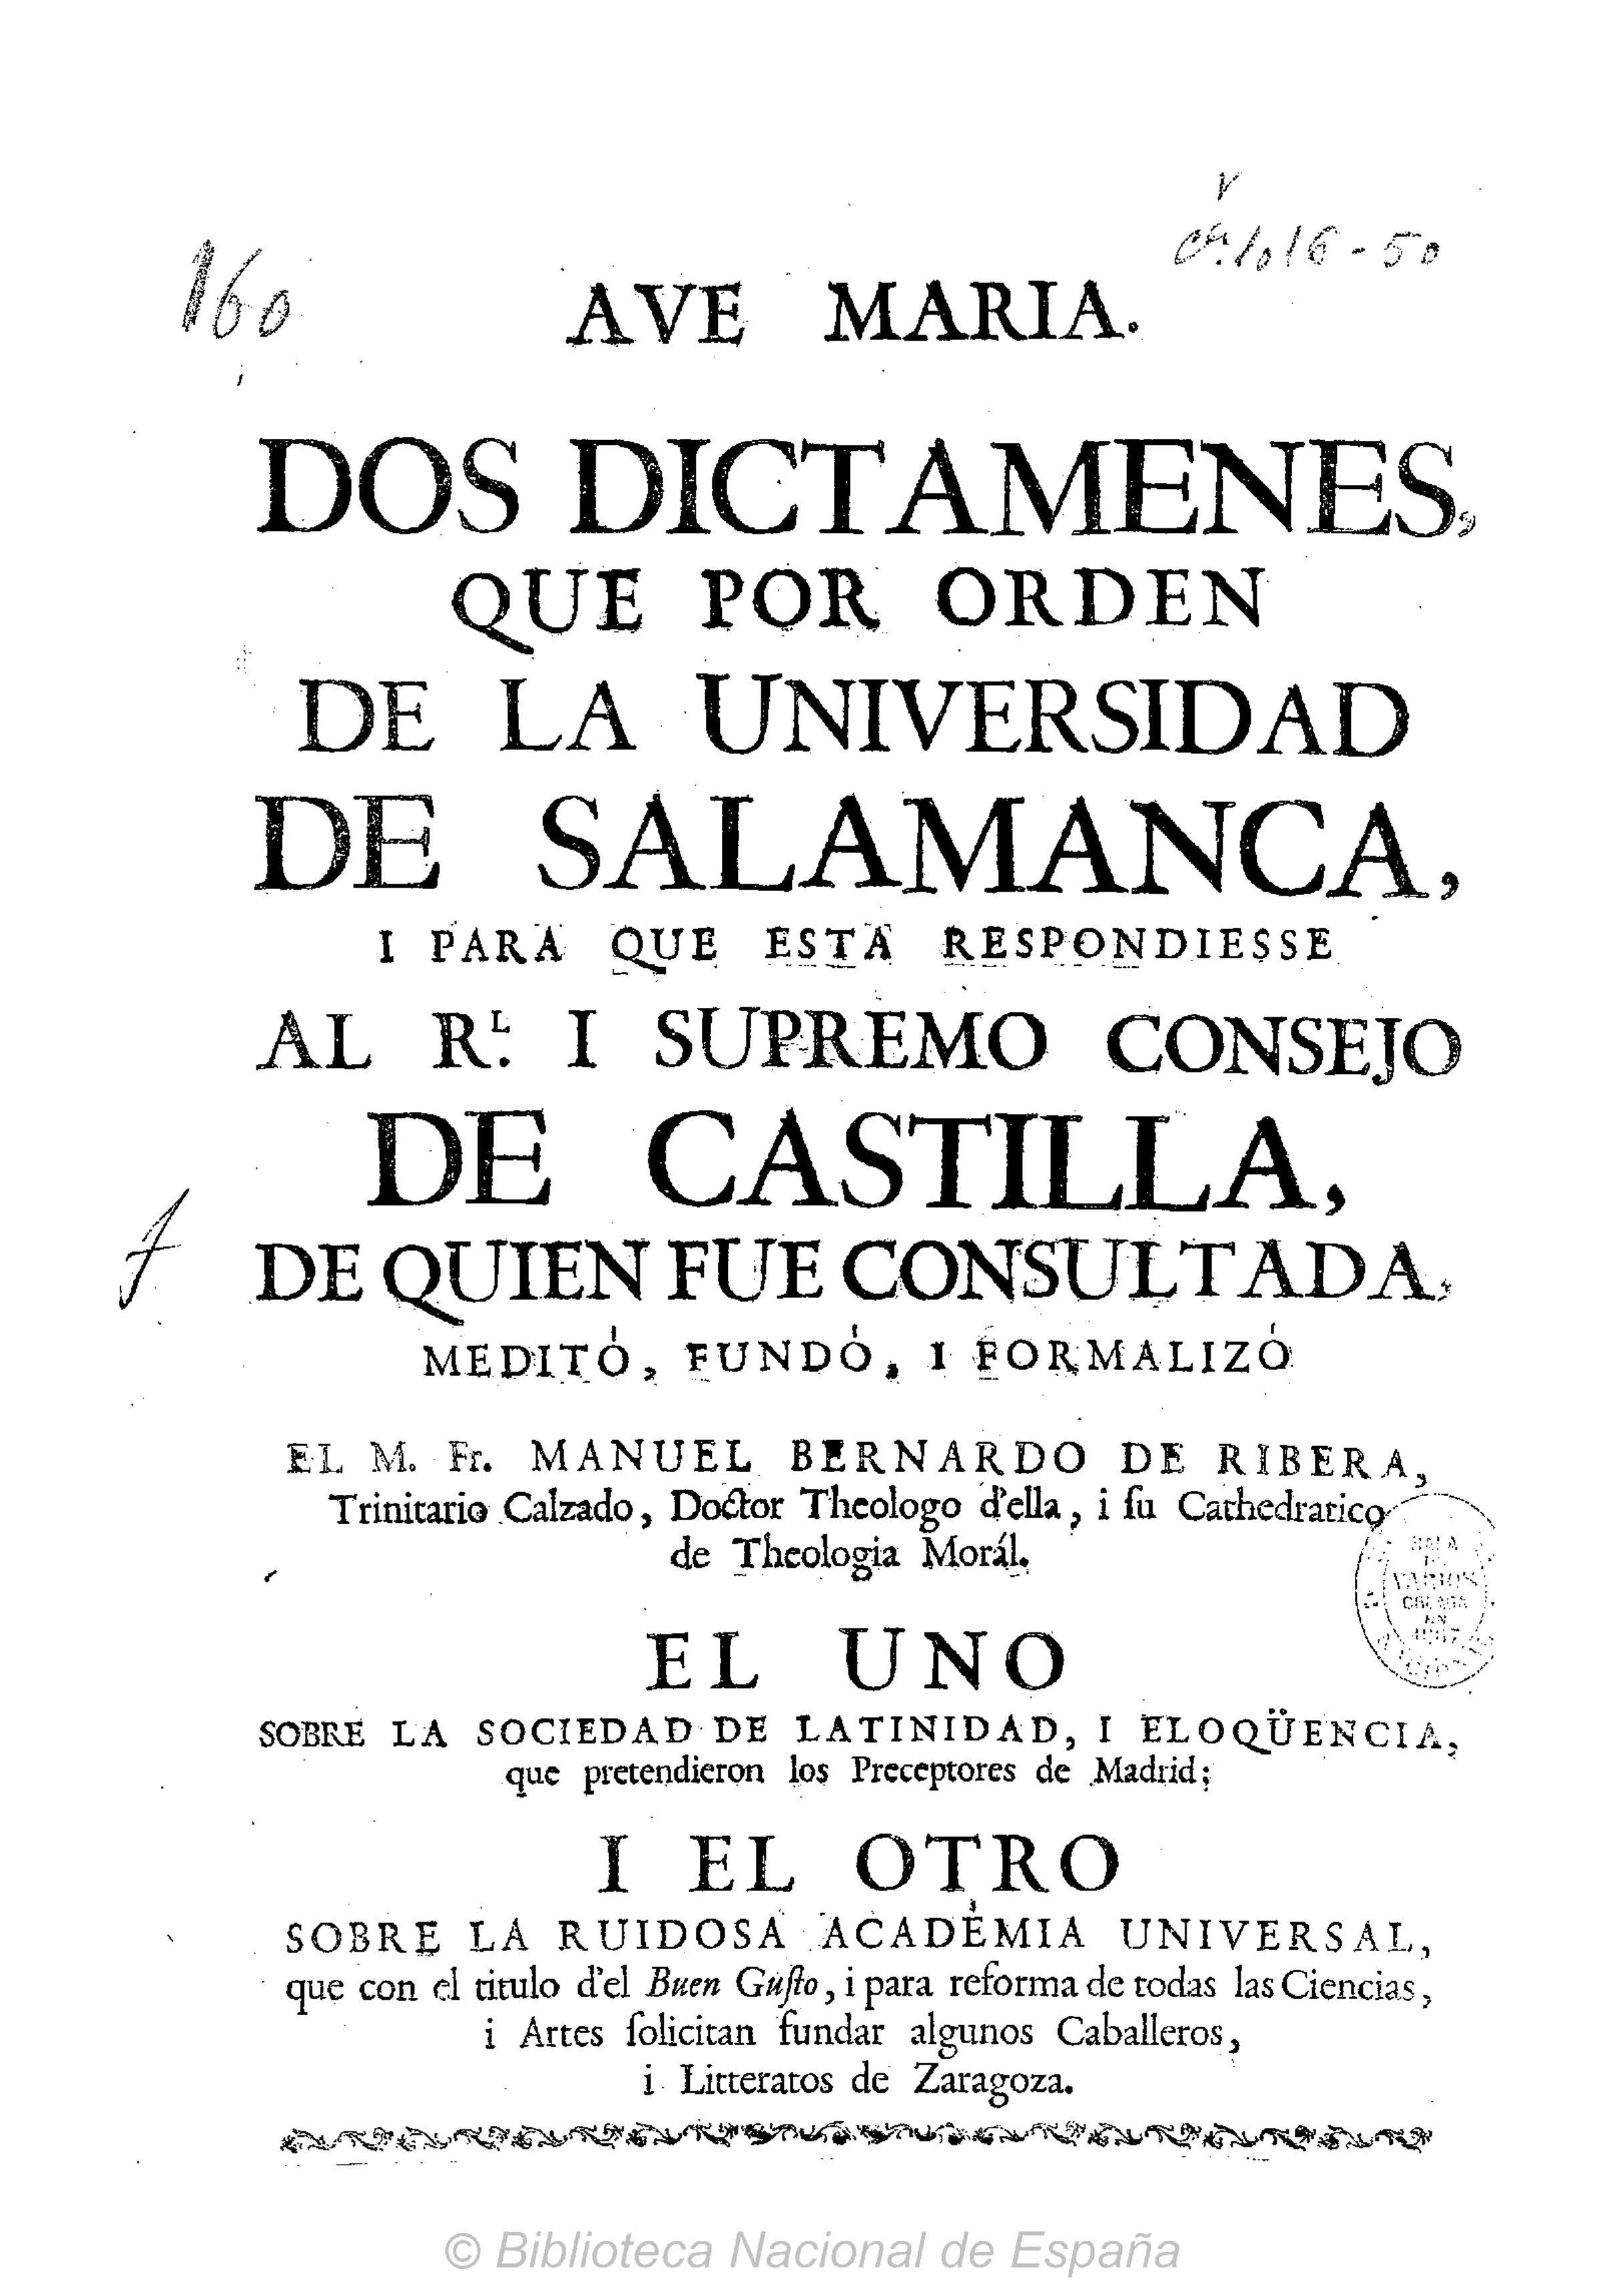 Dos Dictámenes que por orden de la Universidad de Salamanca para que esta respondiese al Real Consejo de Castilla